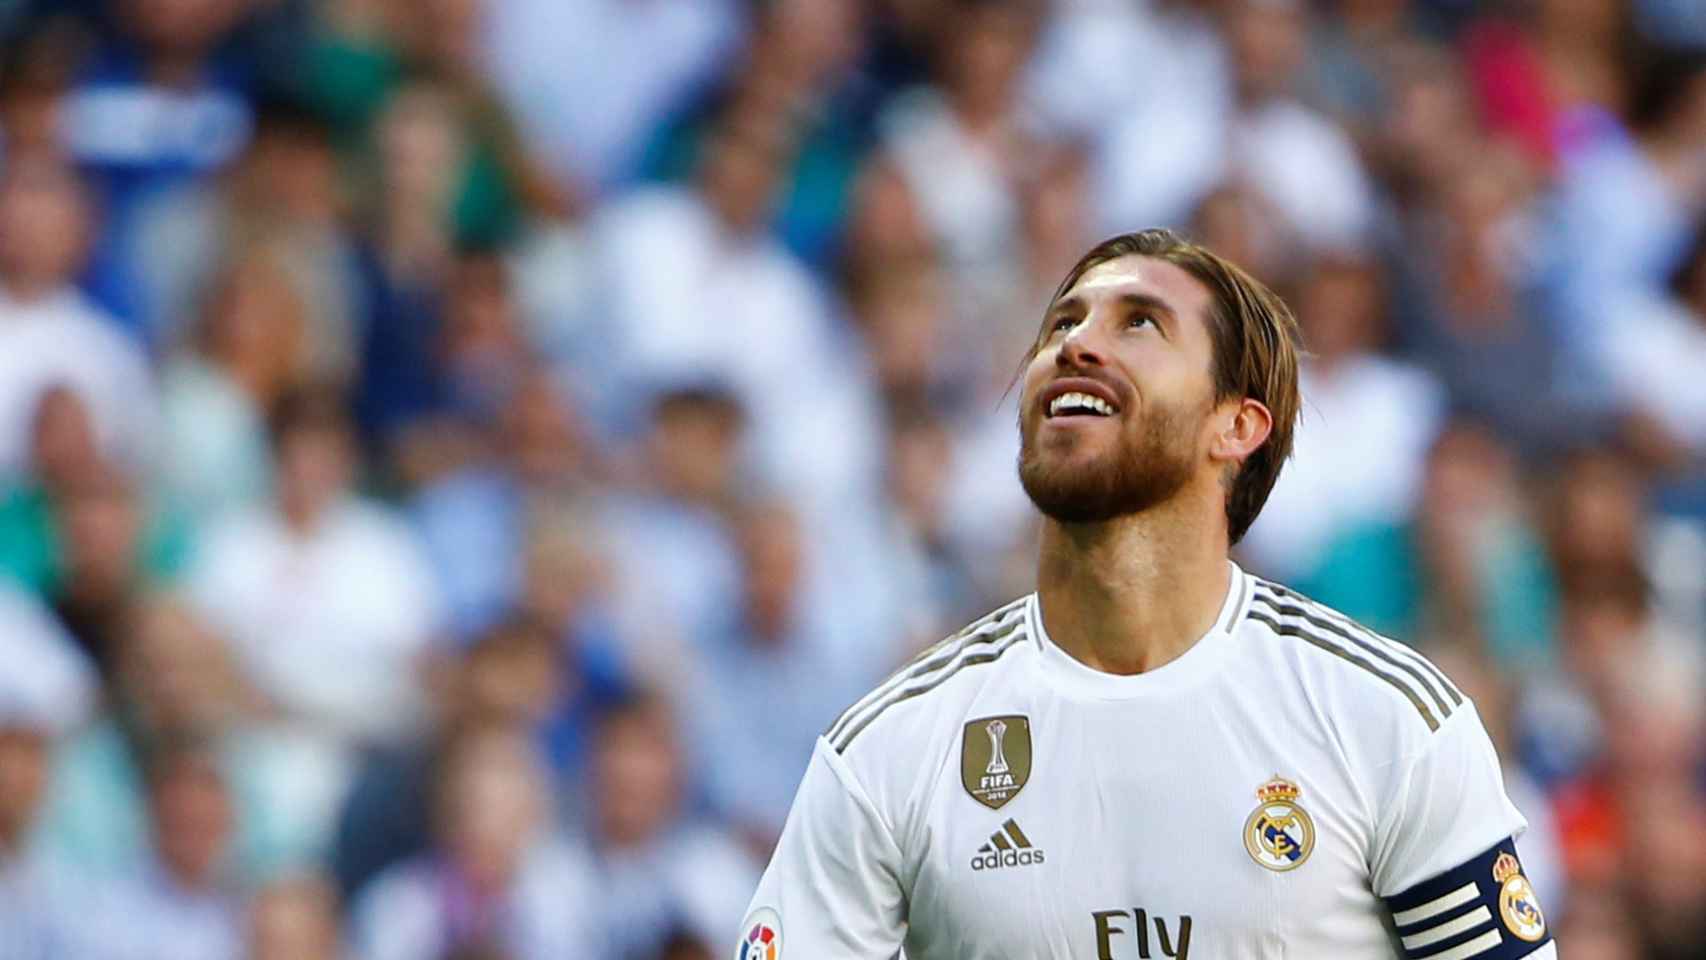 Sergio Ramos mira al cielo tras una ocasión del Real Madrid